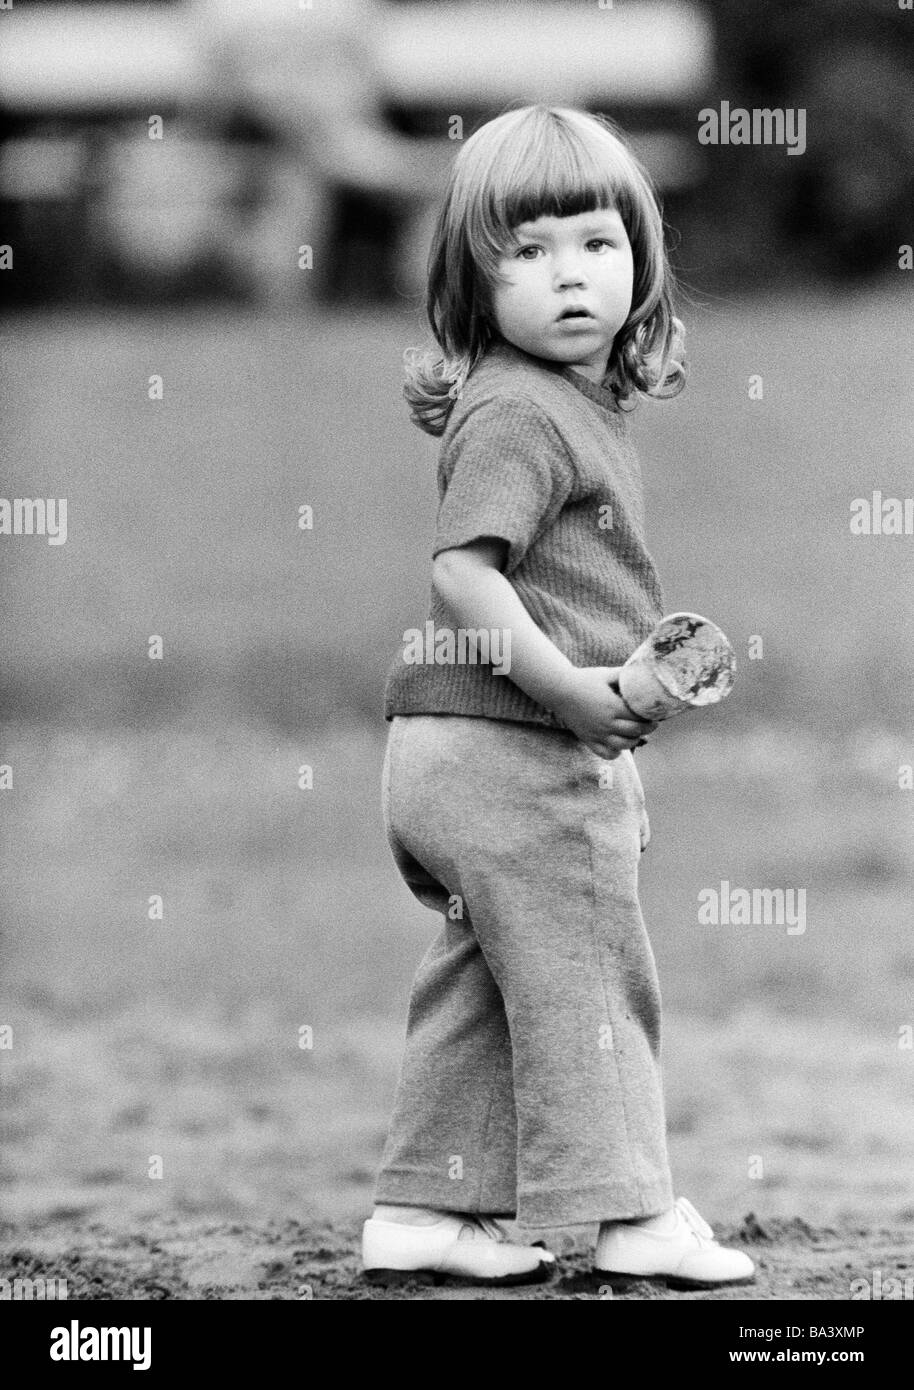 Années 70, photo en noir et blanc, les gens, les enfants, petite fille,  âgés de 2 à 3 ans Photo Stock - Alamy